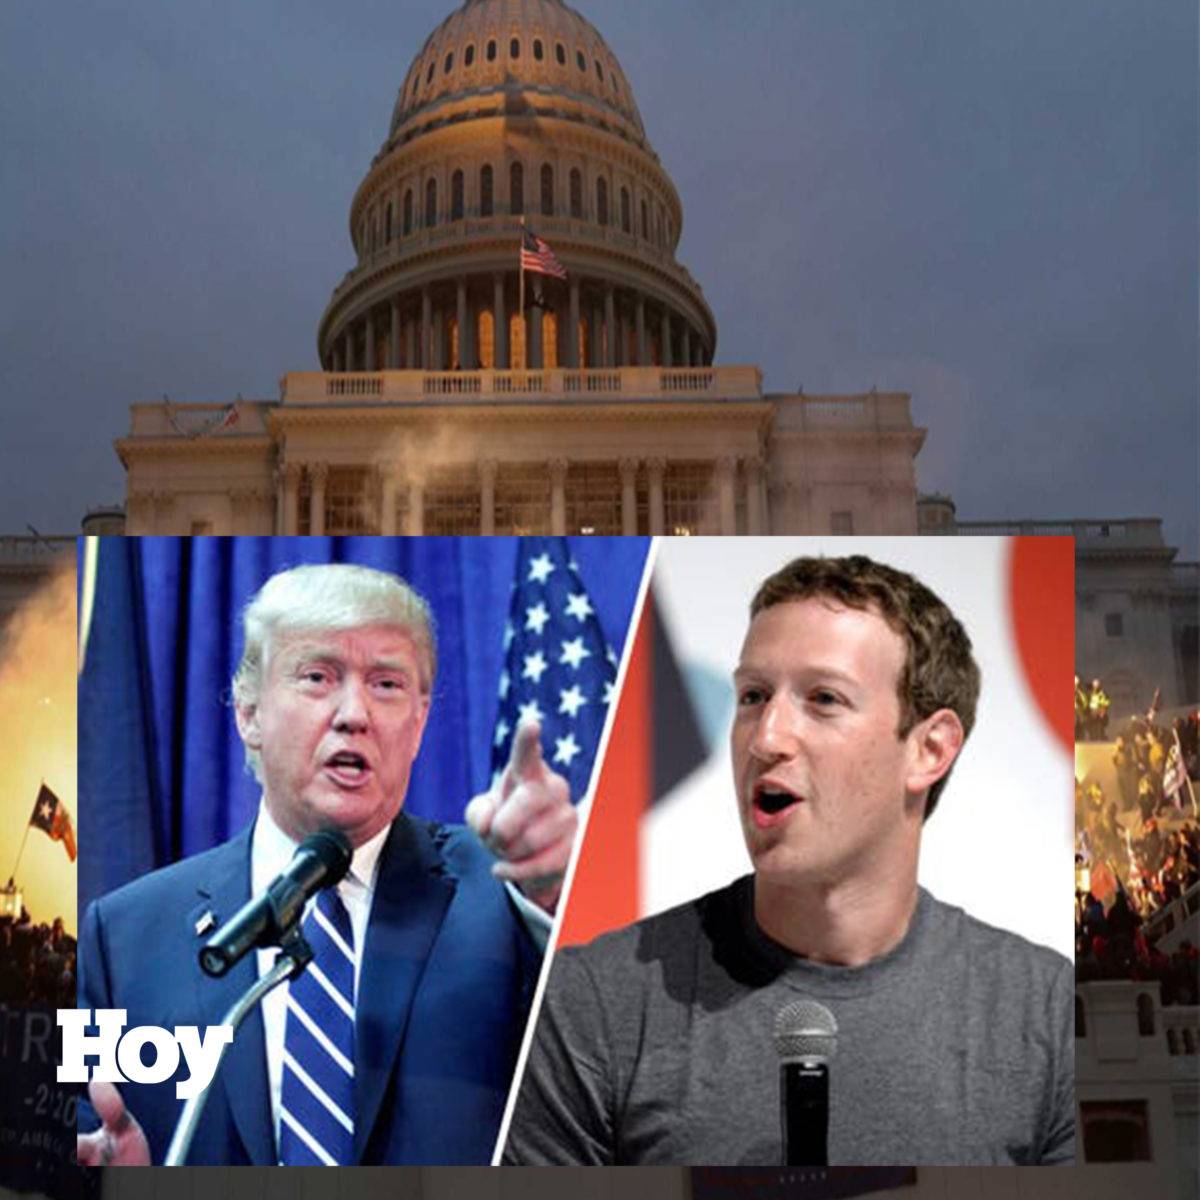 Mark Zuckerberg defiende Facebook y culpa a Trump del asalto al Capitolio